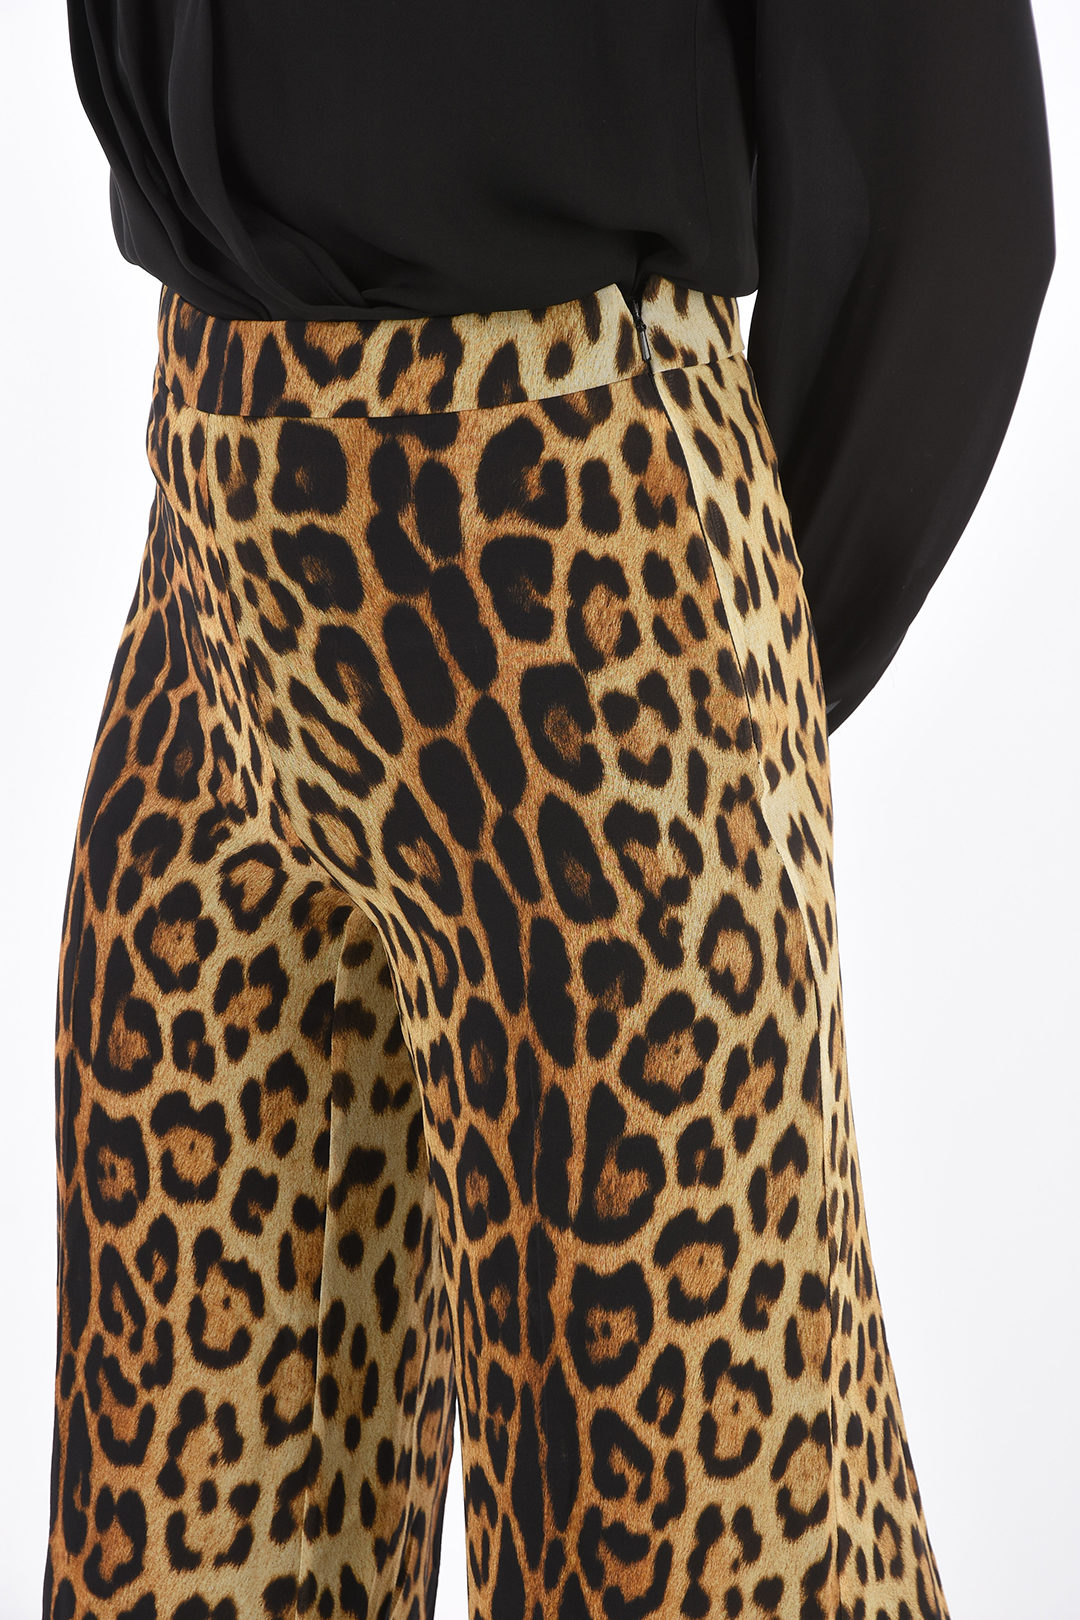 COUTURE! cheetah-print silk high-rise waist bootcut pants